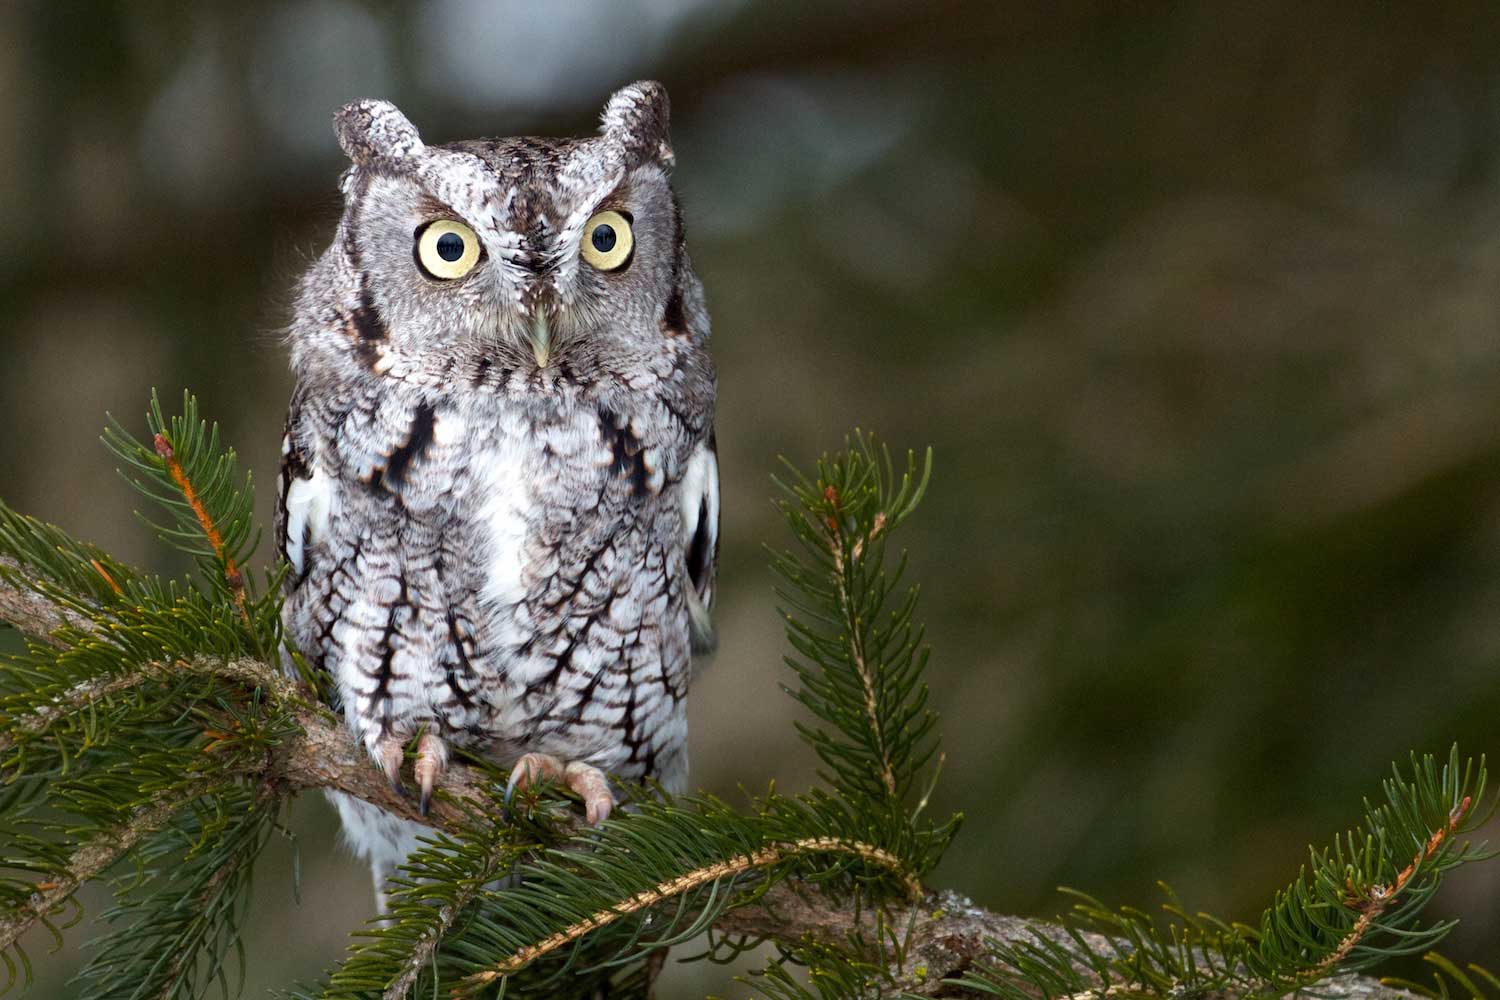 A screech owl on an evergreen tree.